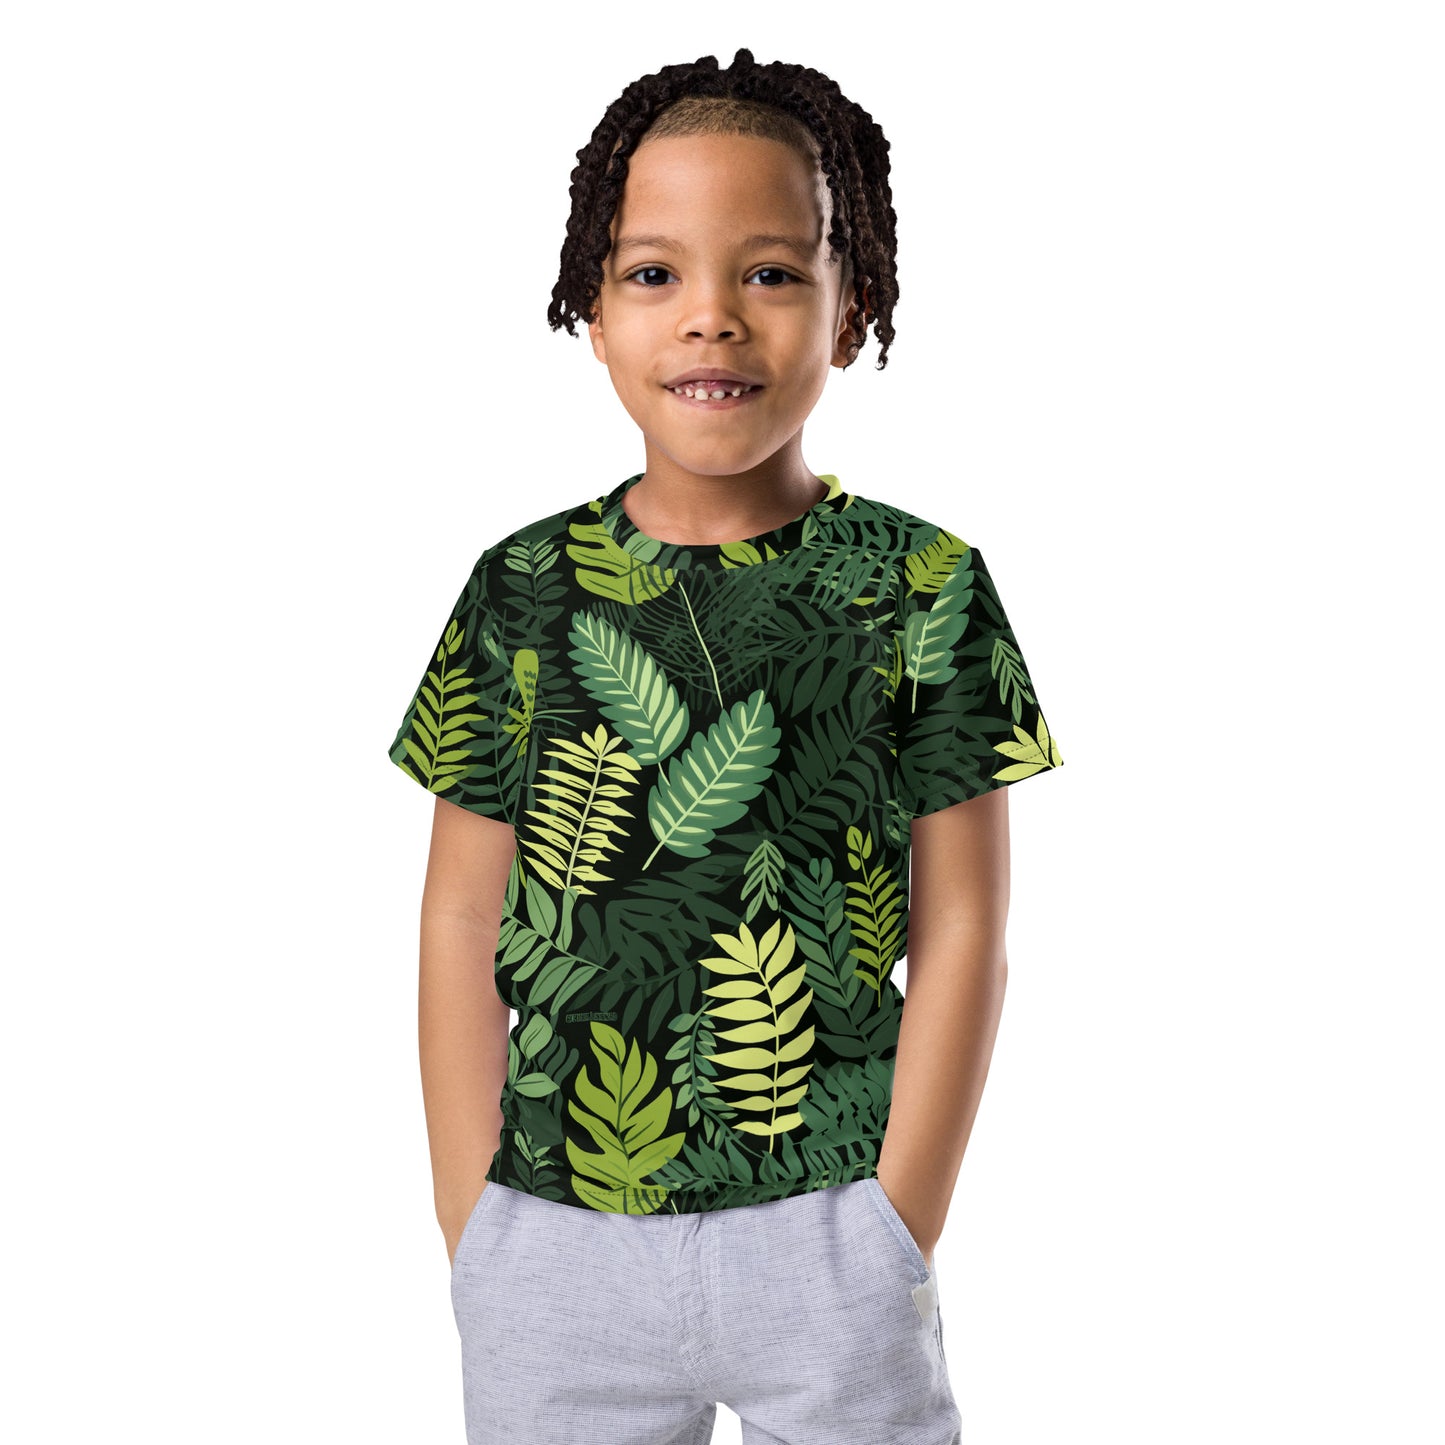 T-Shirt "Prehistoric Plants" for Kids